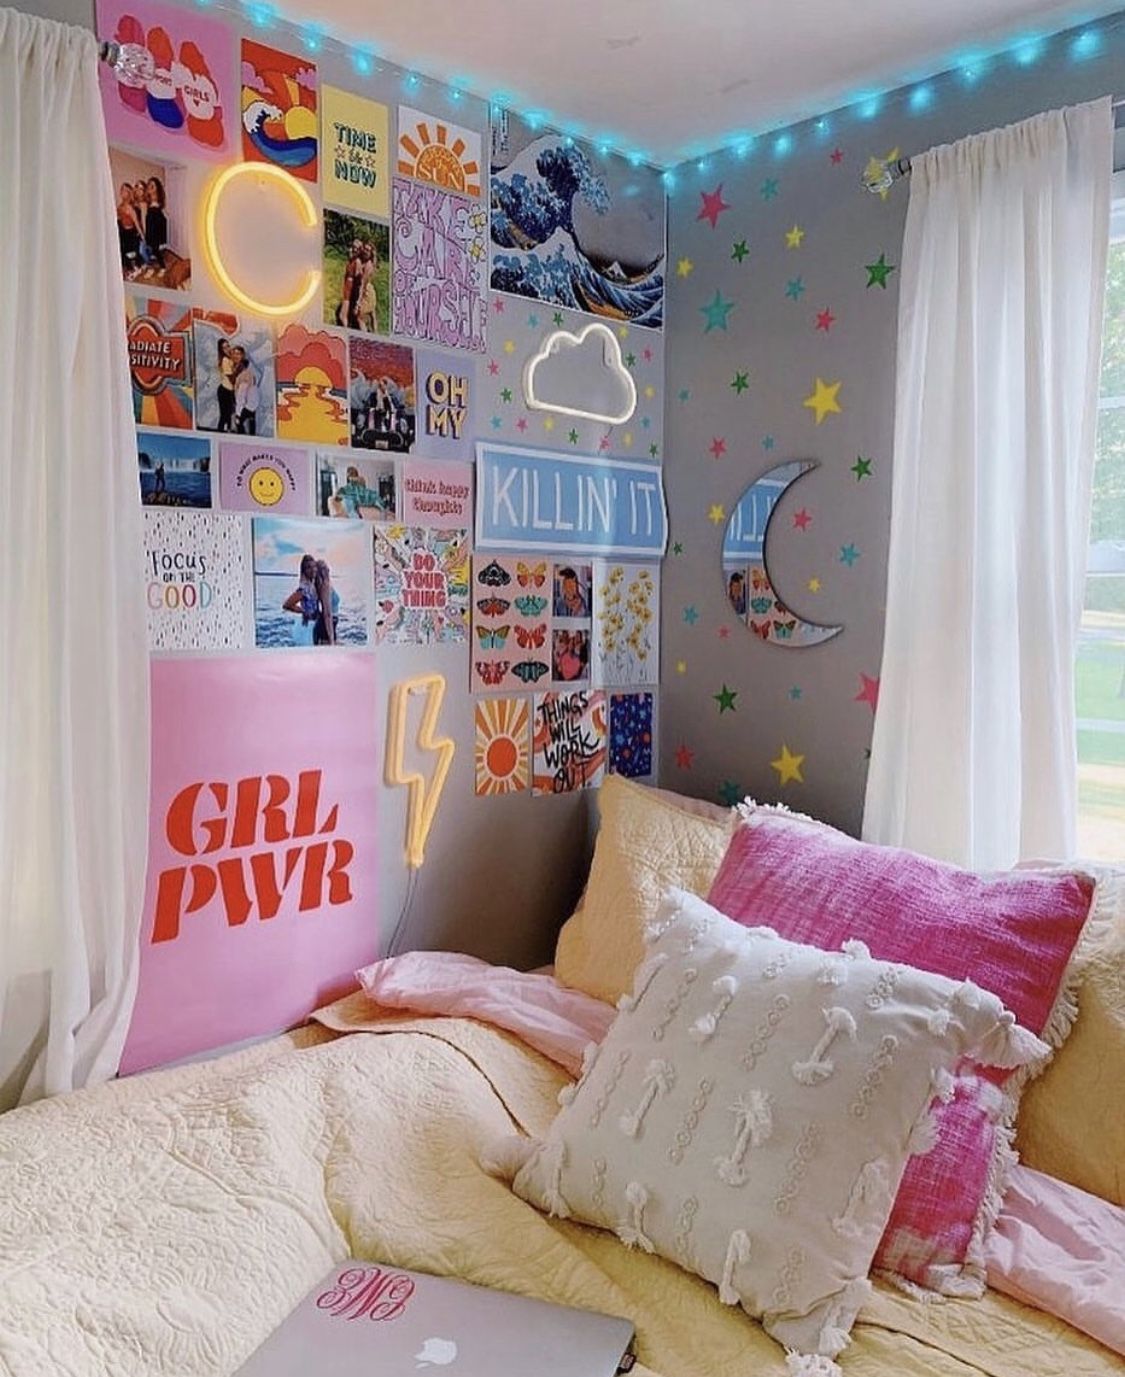 DIY Dorm Room Ideas! - DIY Dorm Room Ideas! -   20 diy Room cute ideas